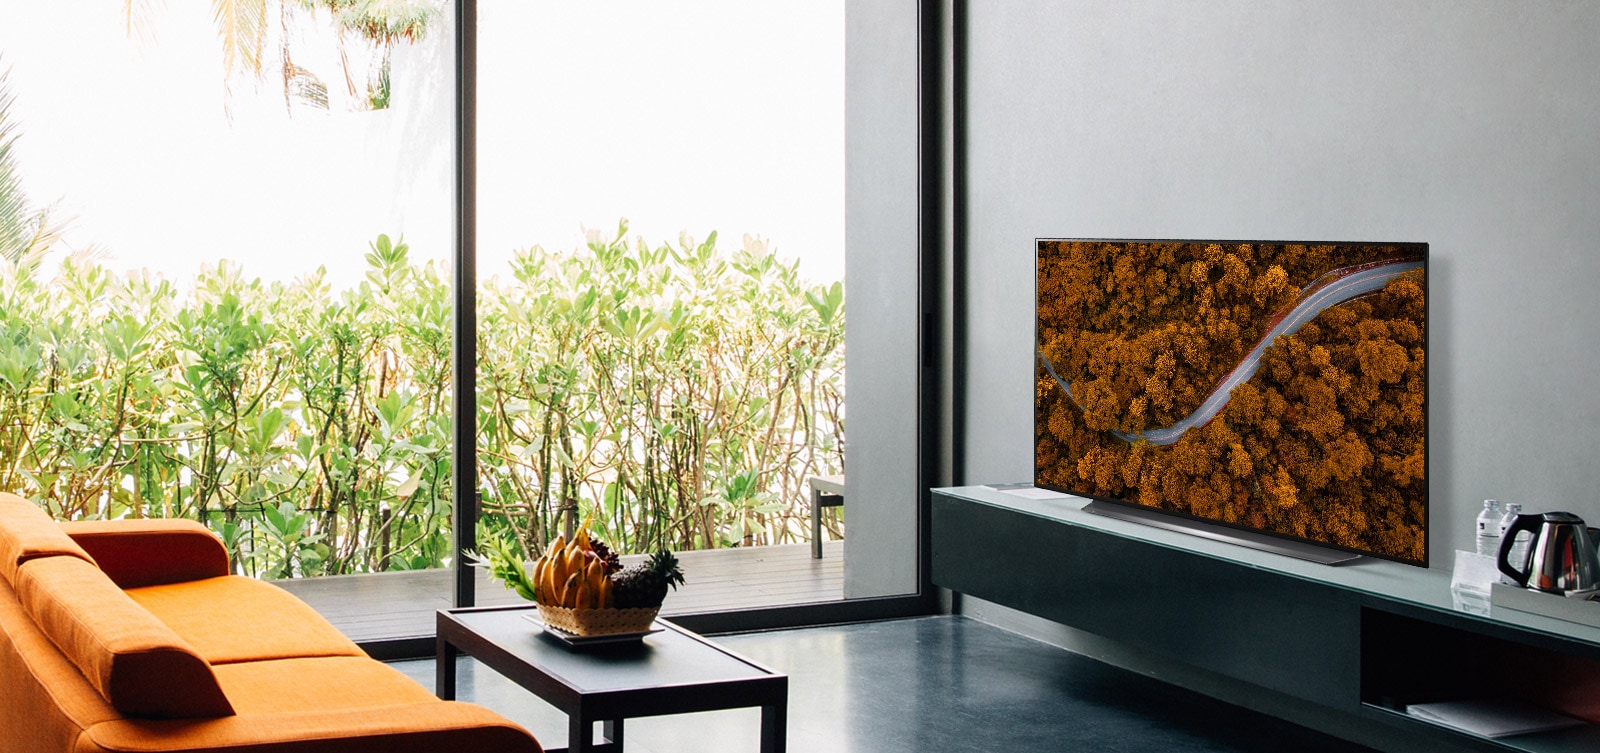 Luxusní obývací pokoj se sedačkou a televizorem, který zobrazuje letecký pohled na přírodu